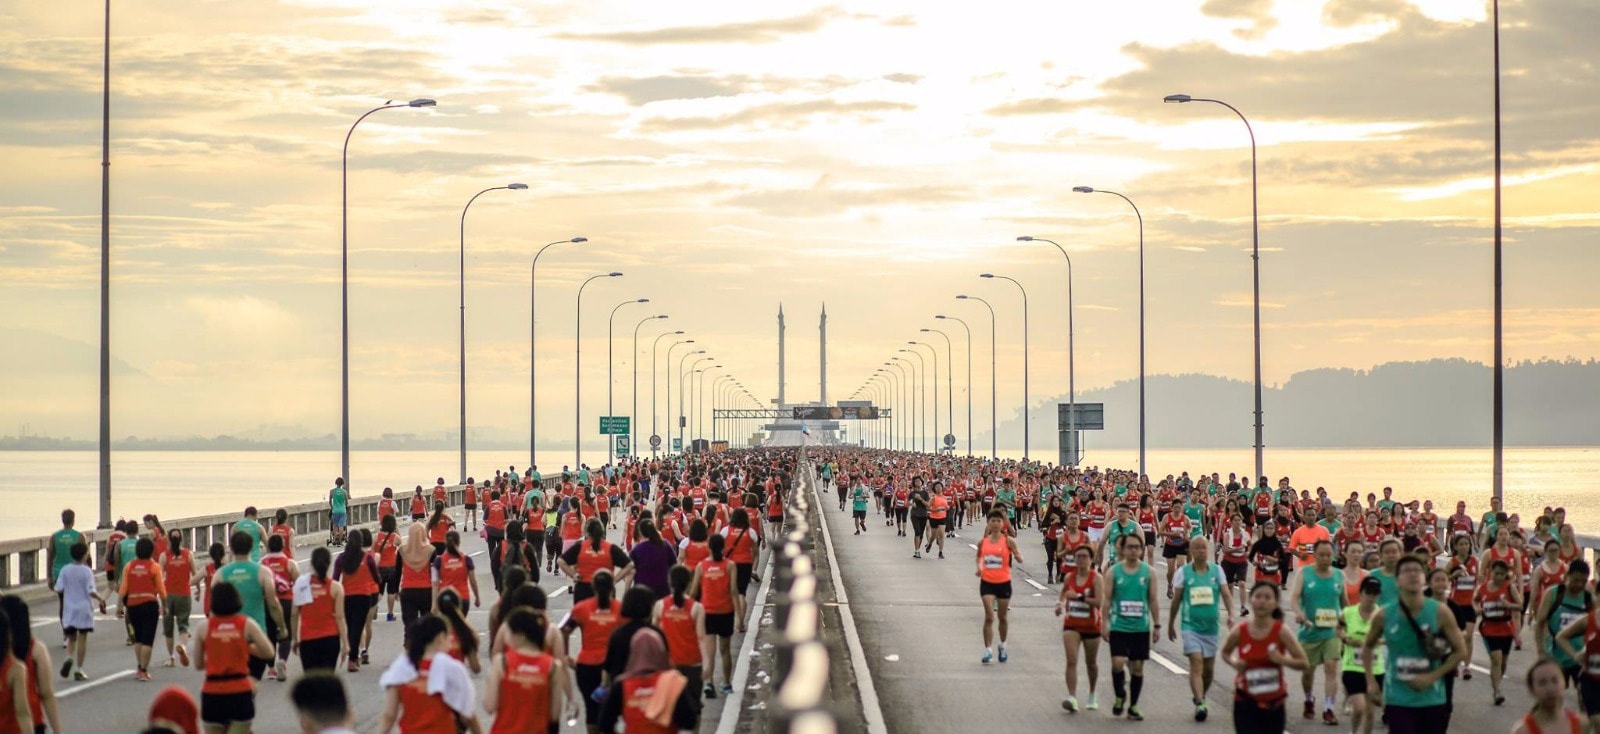 About Penang Bridge International Marathon Penang Bridge